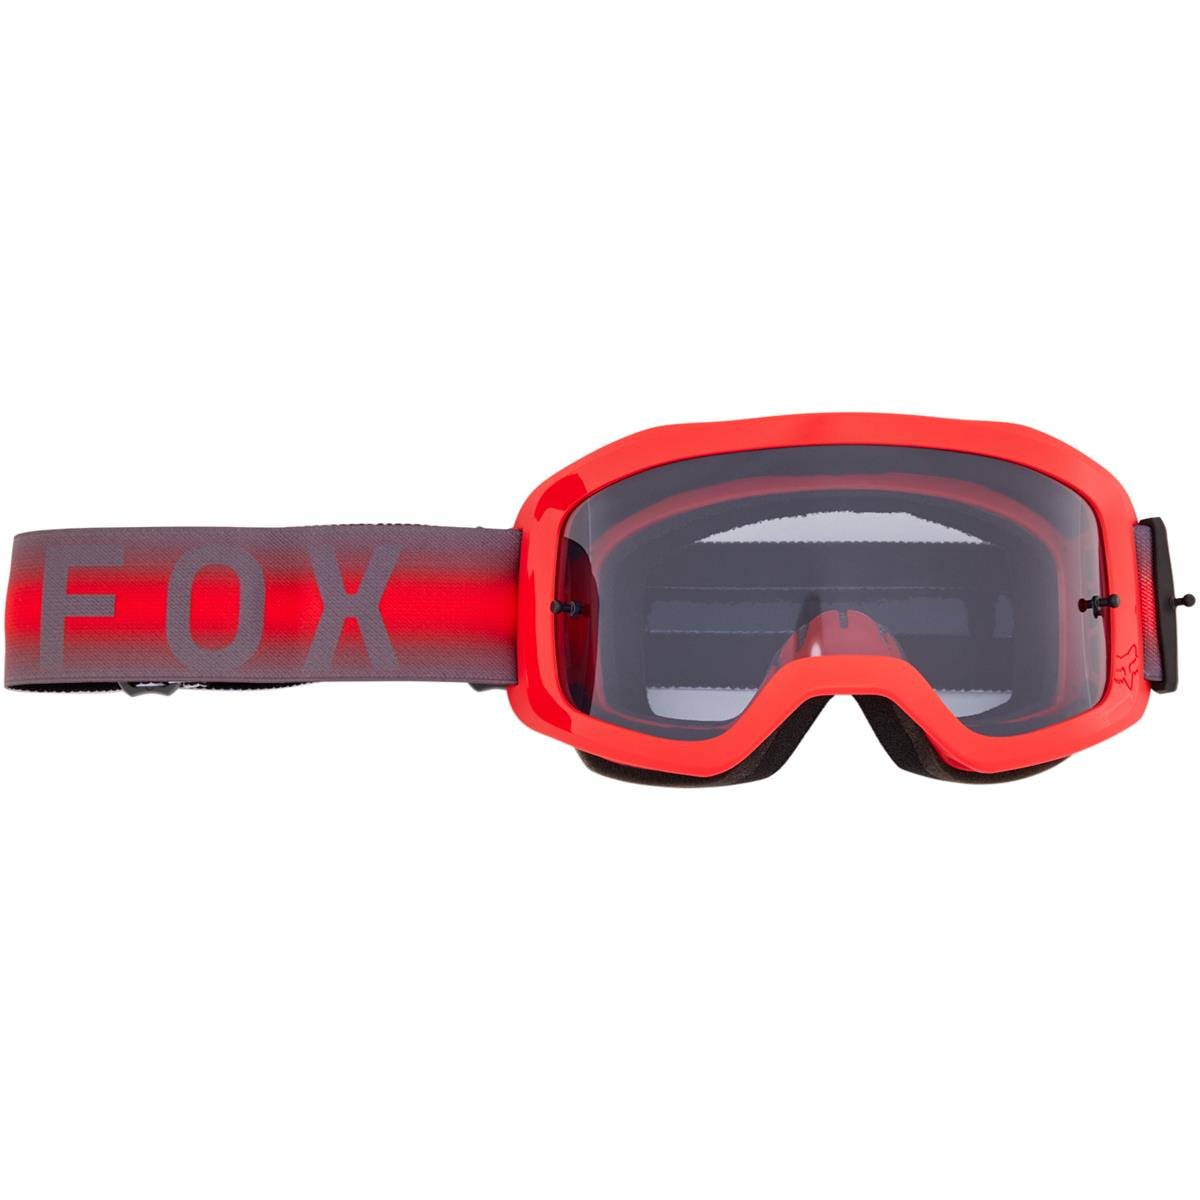 Fox Goggle Main Interfere - Smoke - Flo Red, Non-Mirrored